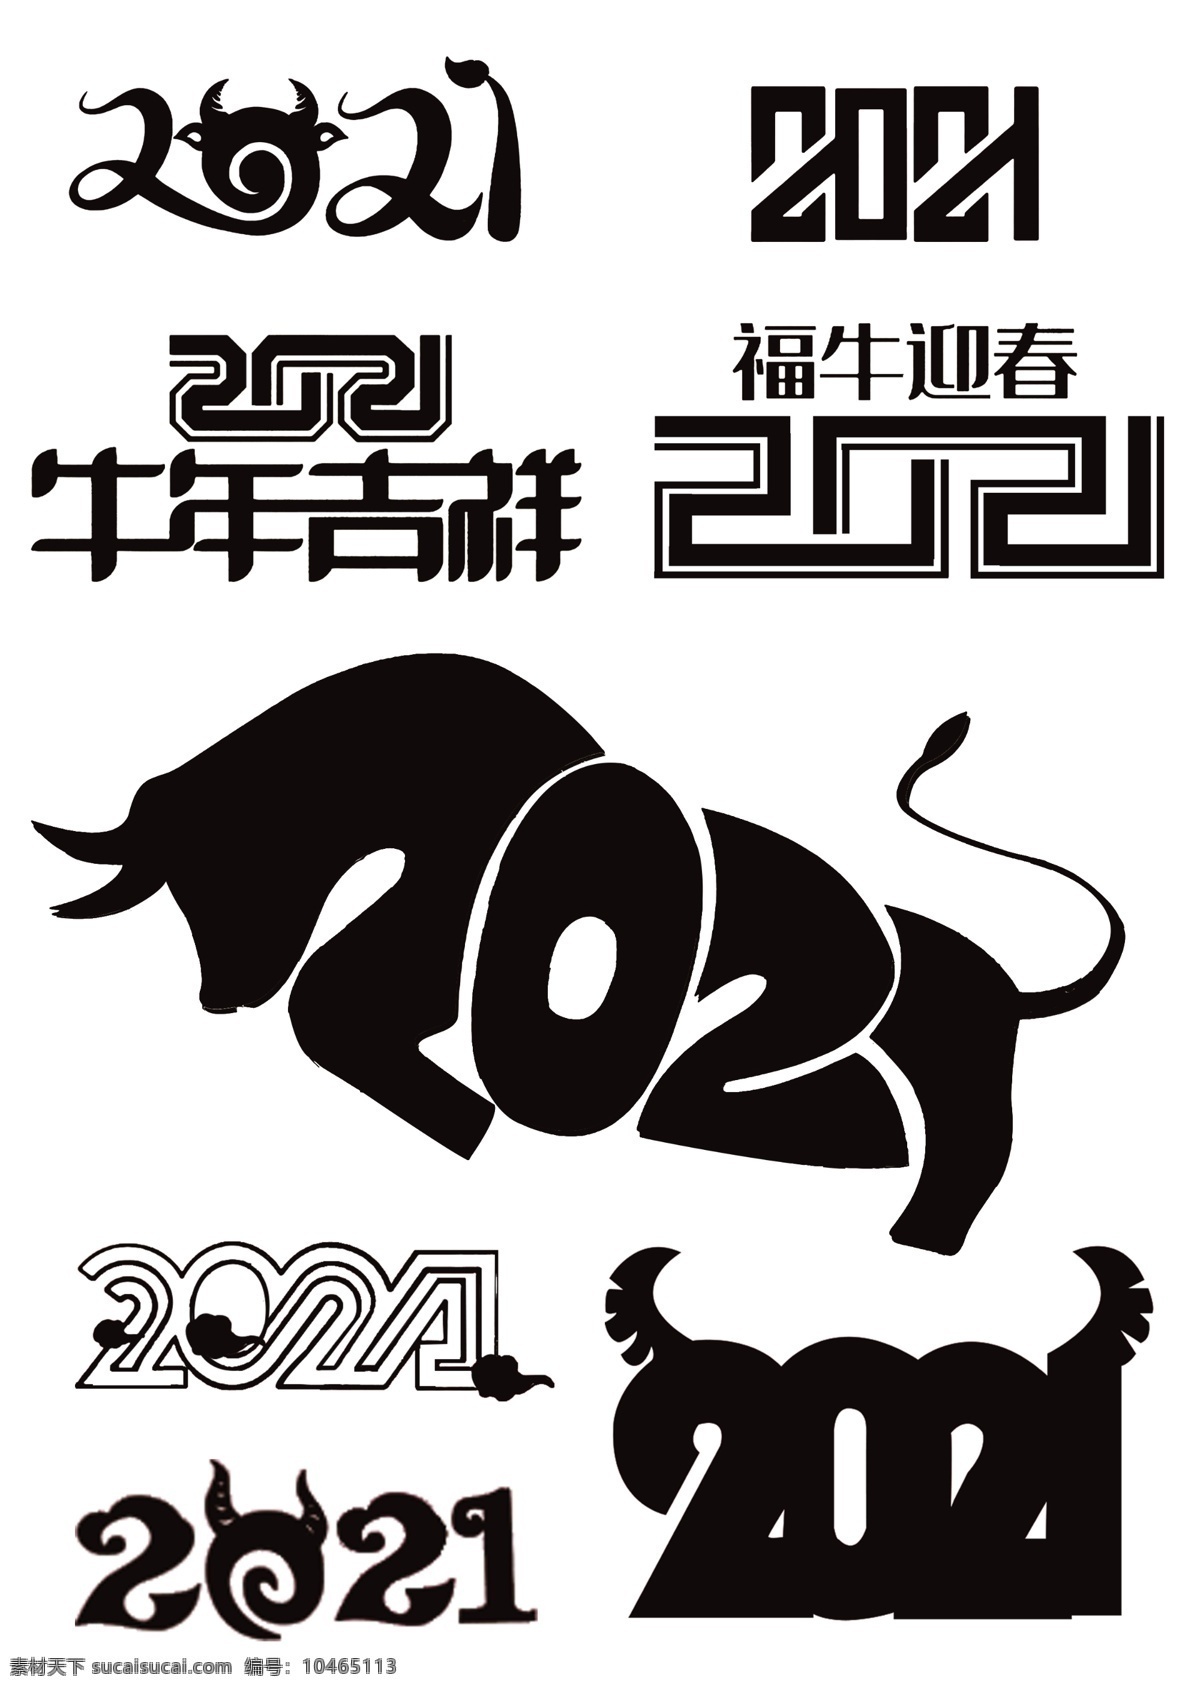 2021 牛年 字体 2021牛年 字体设计 创意字体 数字素材 牛年吉祥 福牛迎春 牛年春节 2021字体 牛年海报